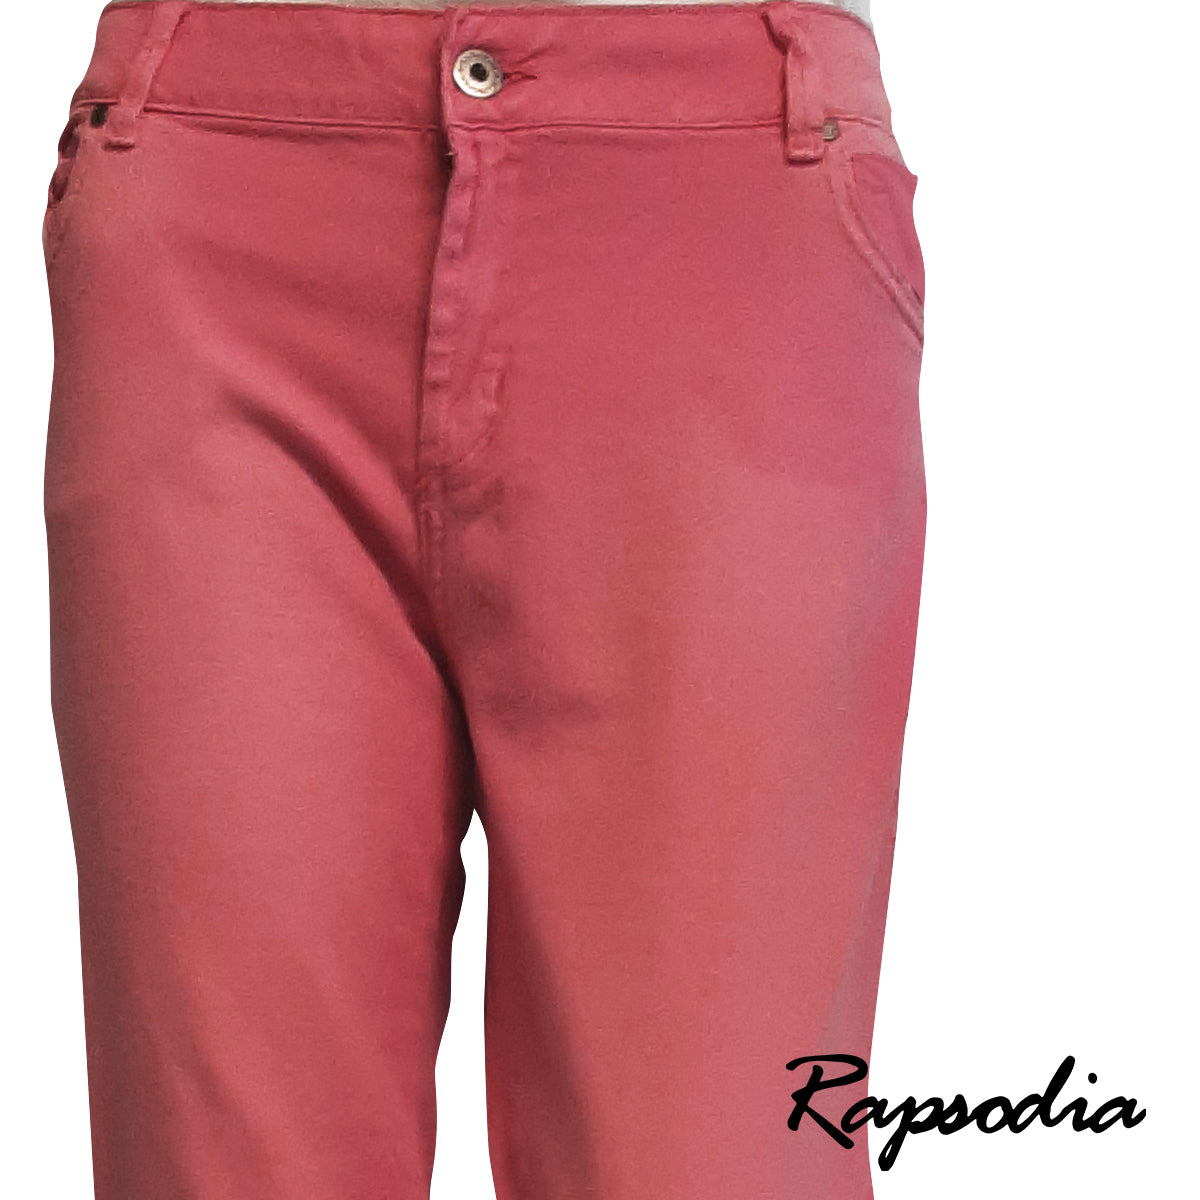 Jeans Rapsodia Queen Colors Rosa